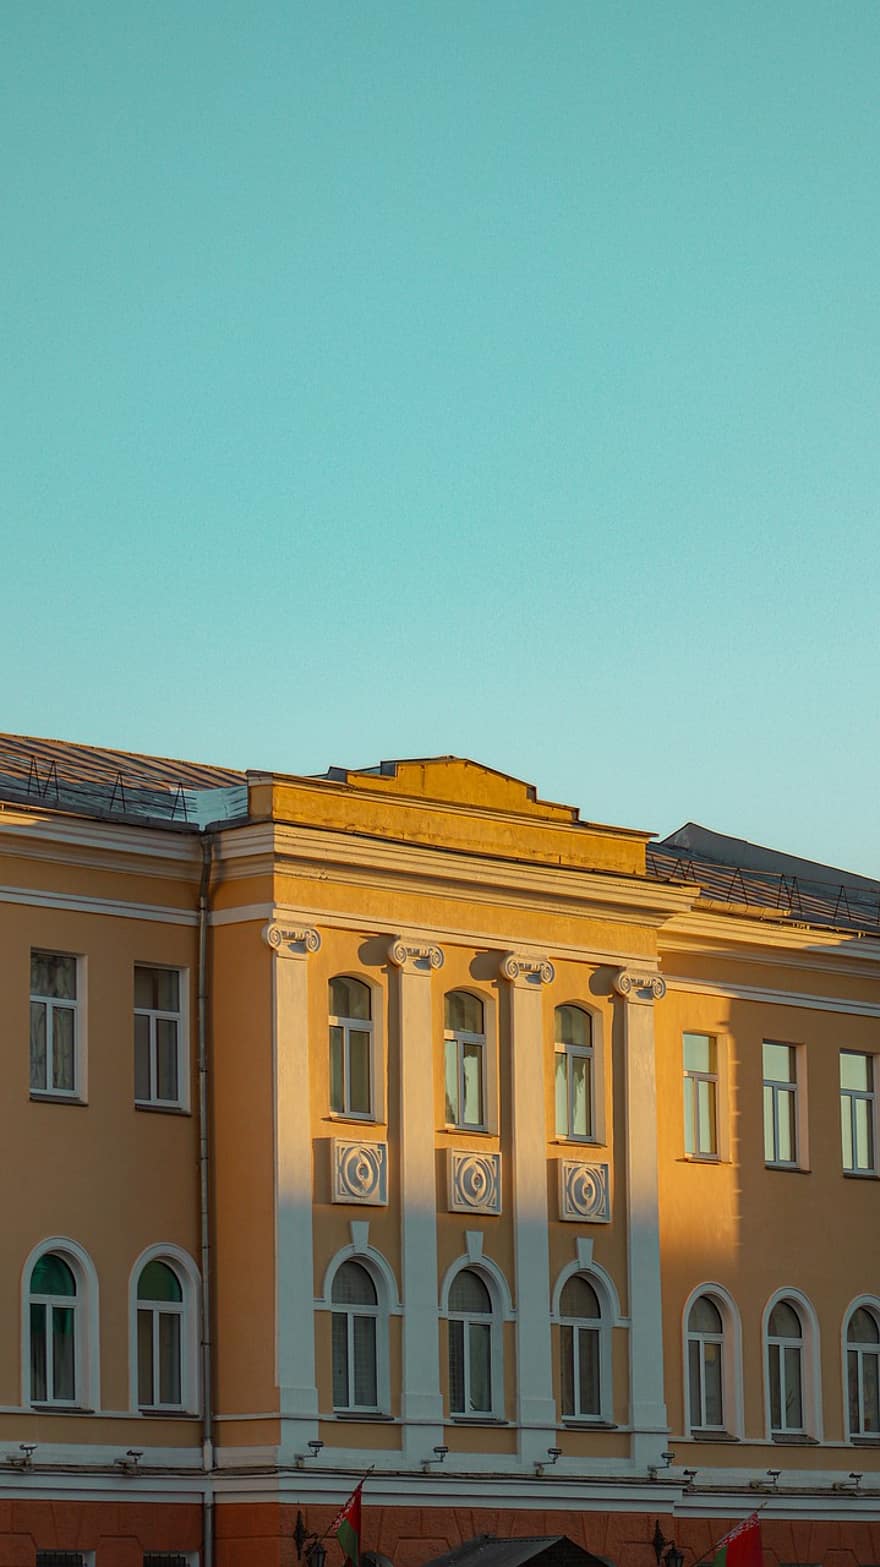 Минск, строительство, архитектура, Беларусь, фасад, поместье, экстерьер здания, построенная структура, окно, синий, городской пейзаж